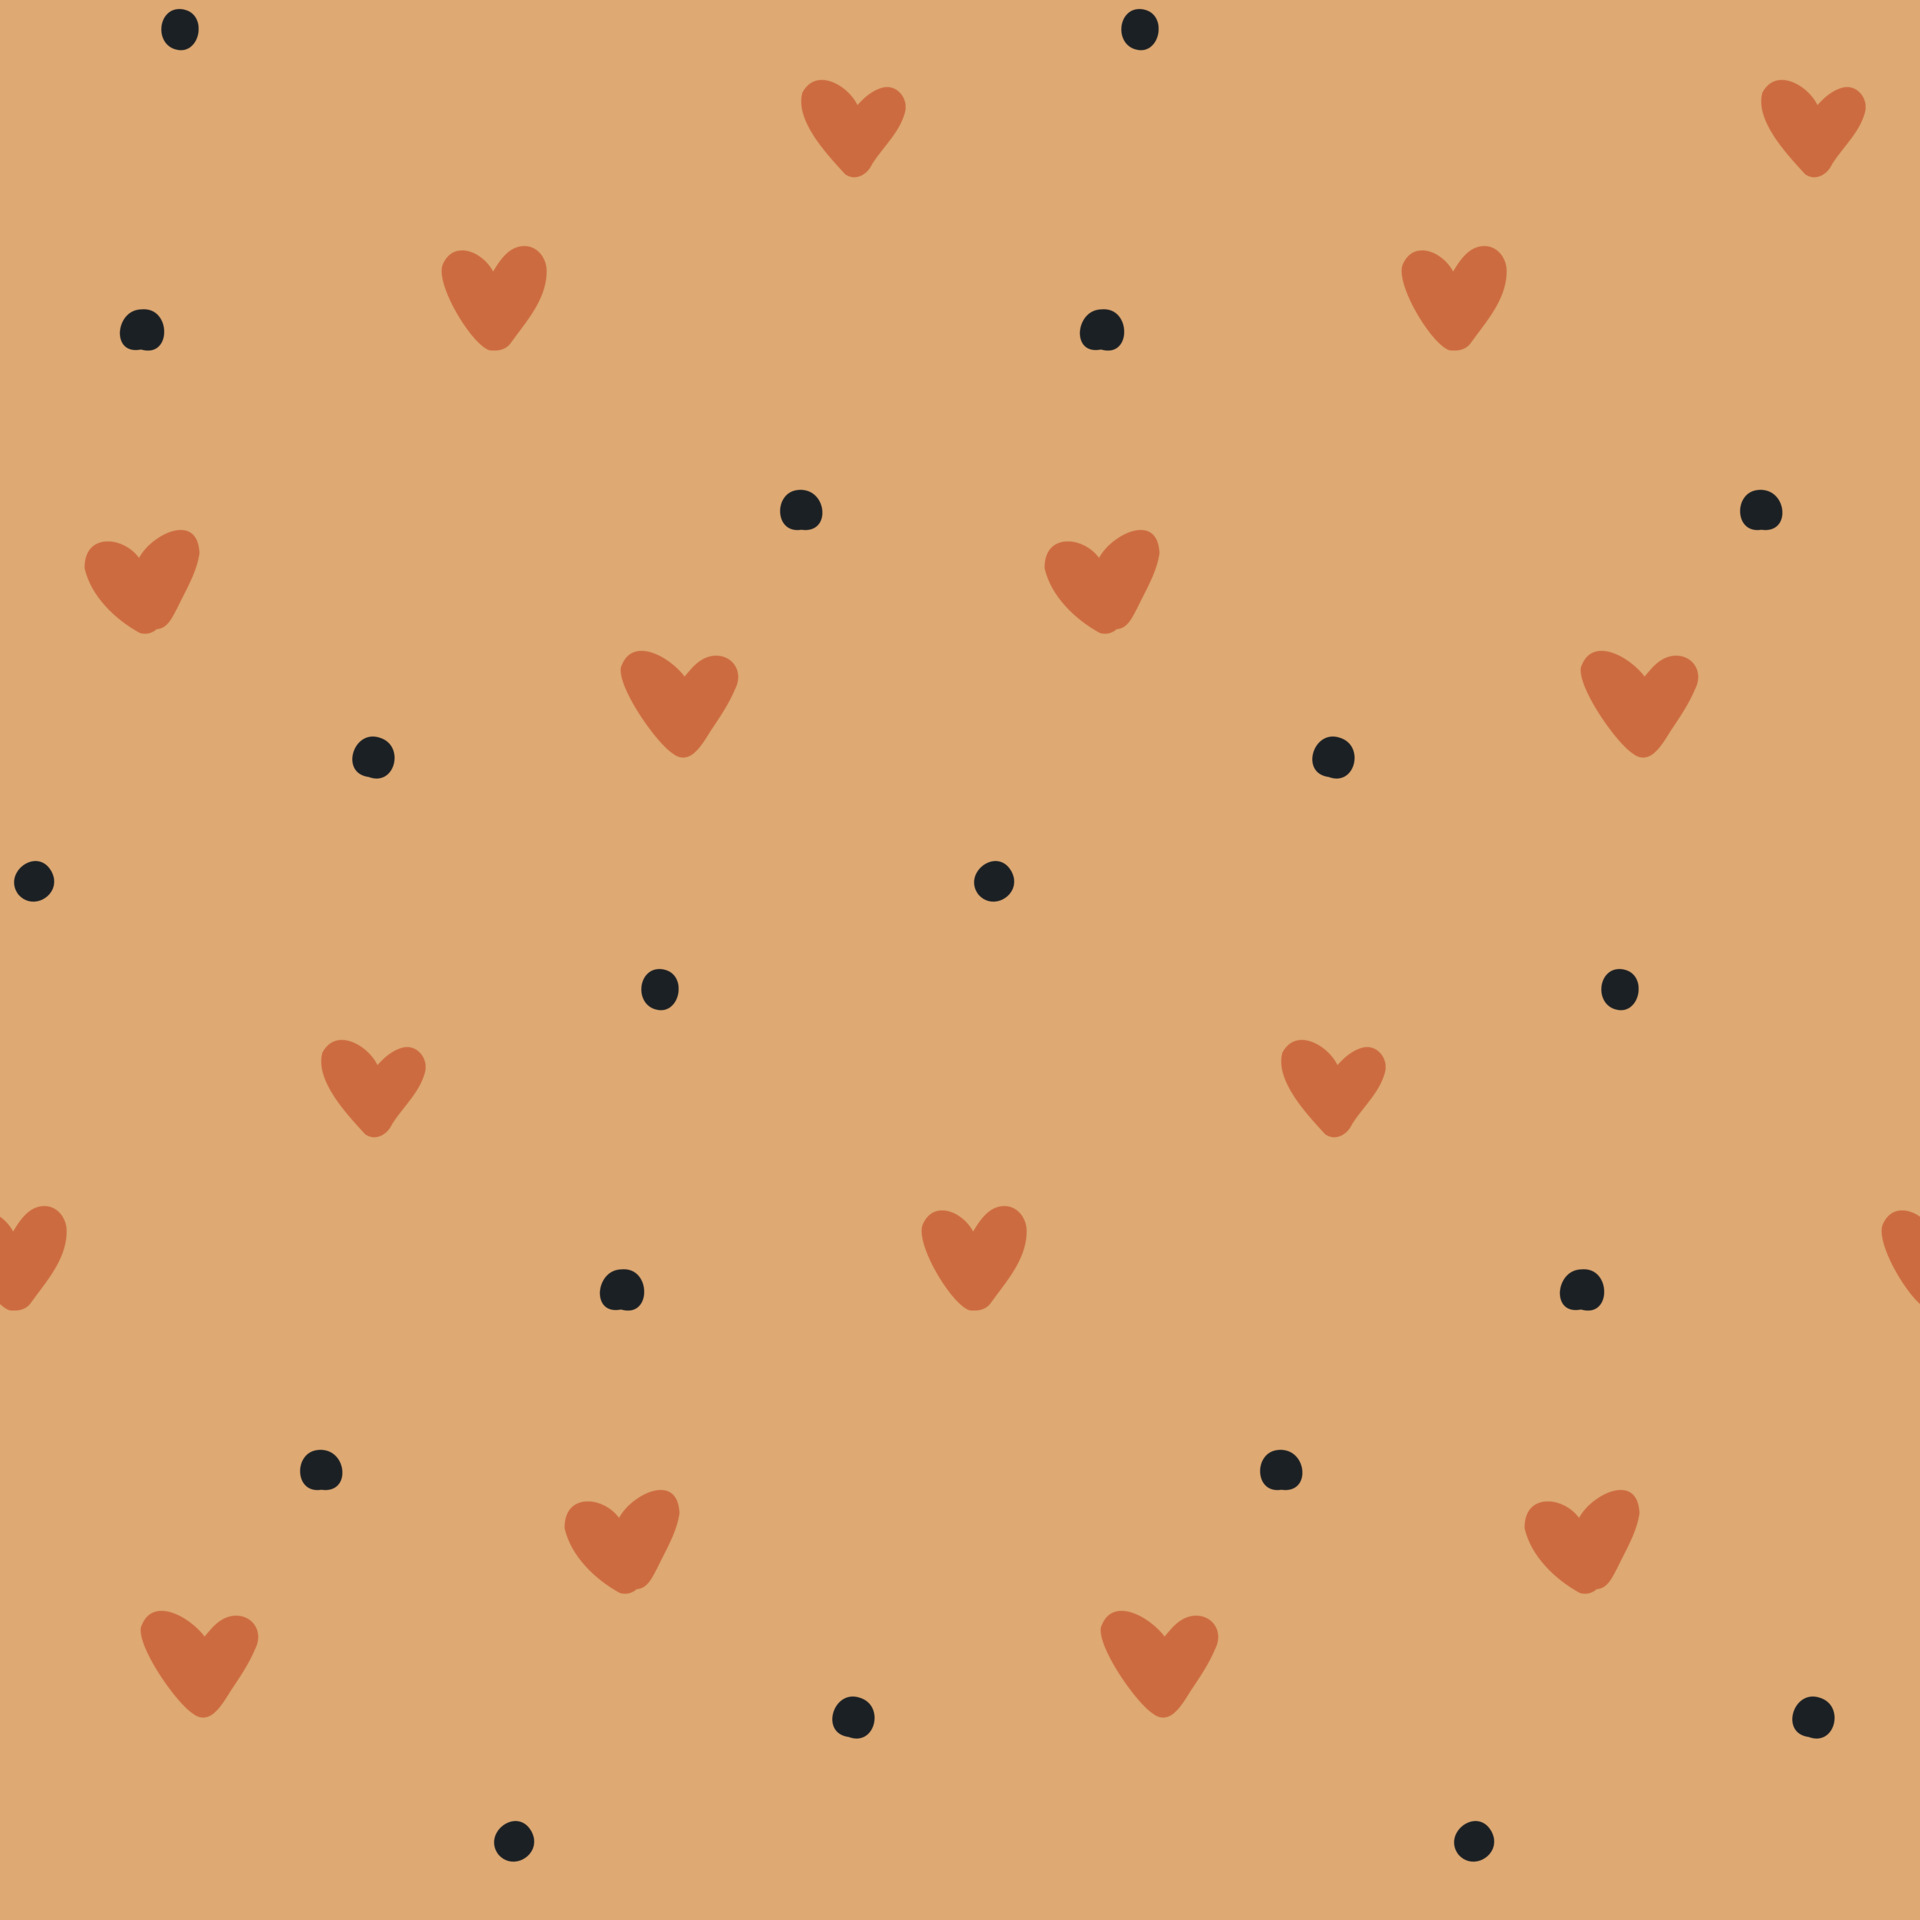 Hình nền boho pattern heart với họa tiết độc đáo sẽ đem lại cảm giác phóng khoáng cho không gian của bạn.